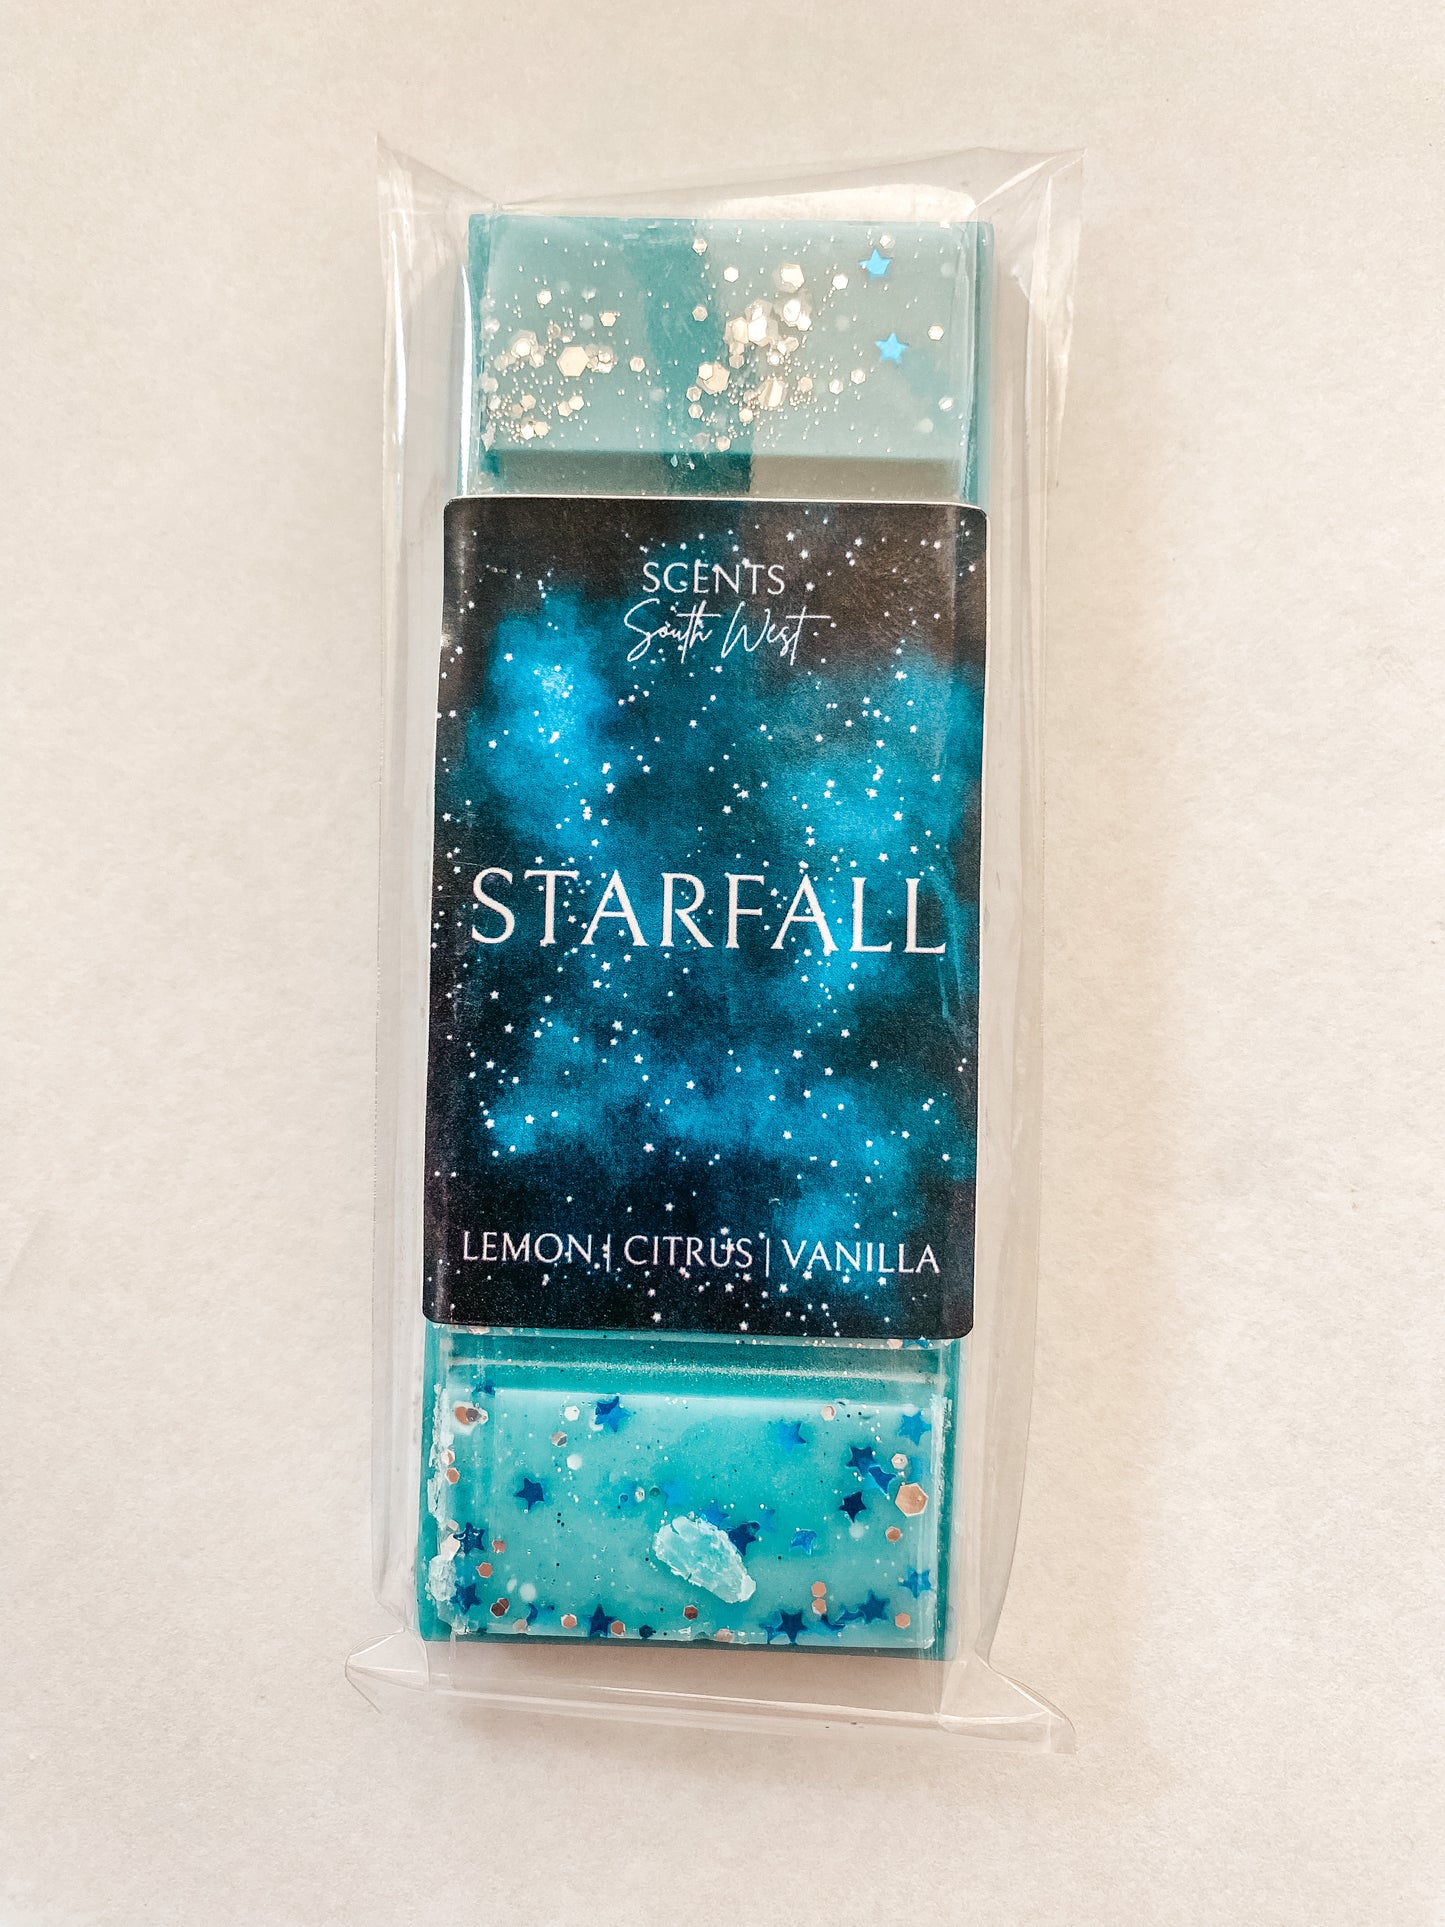 Starfall ACOTAR inspired